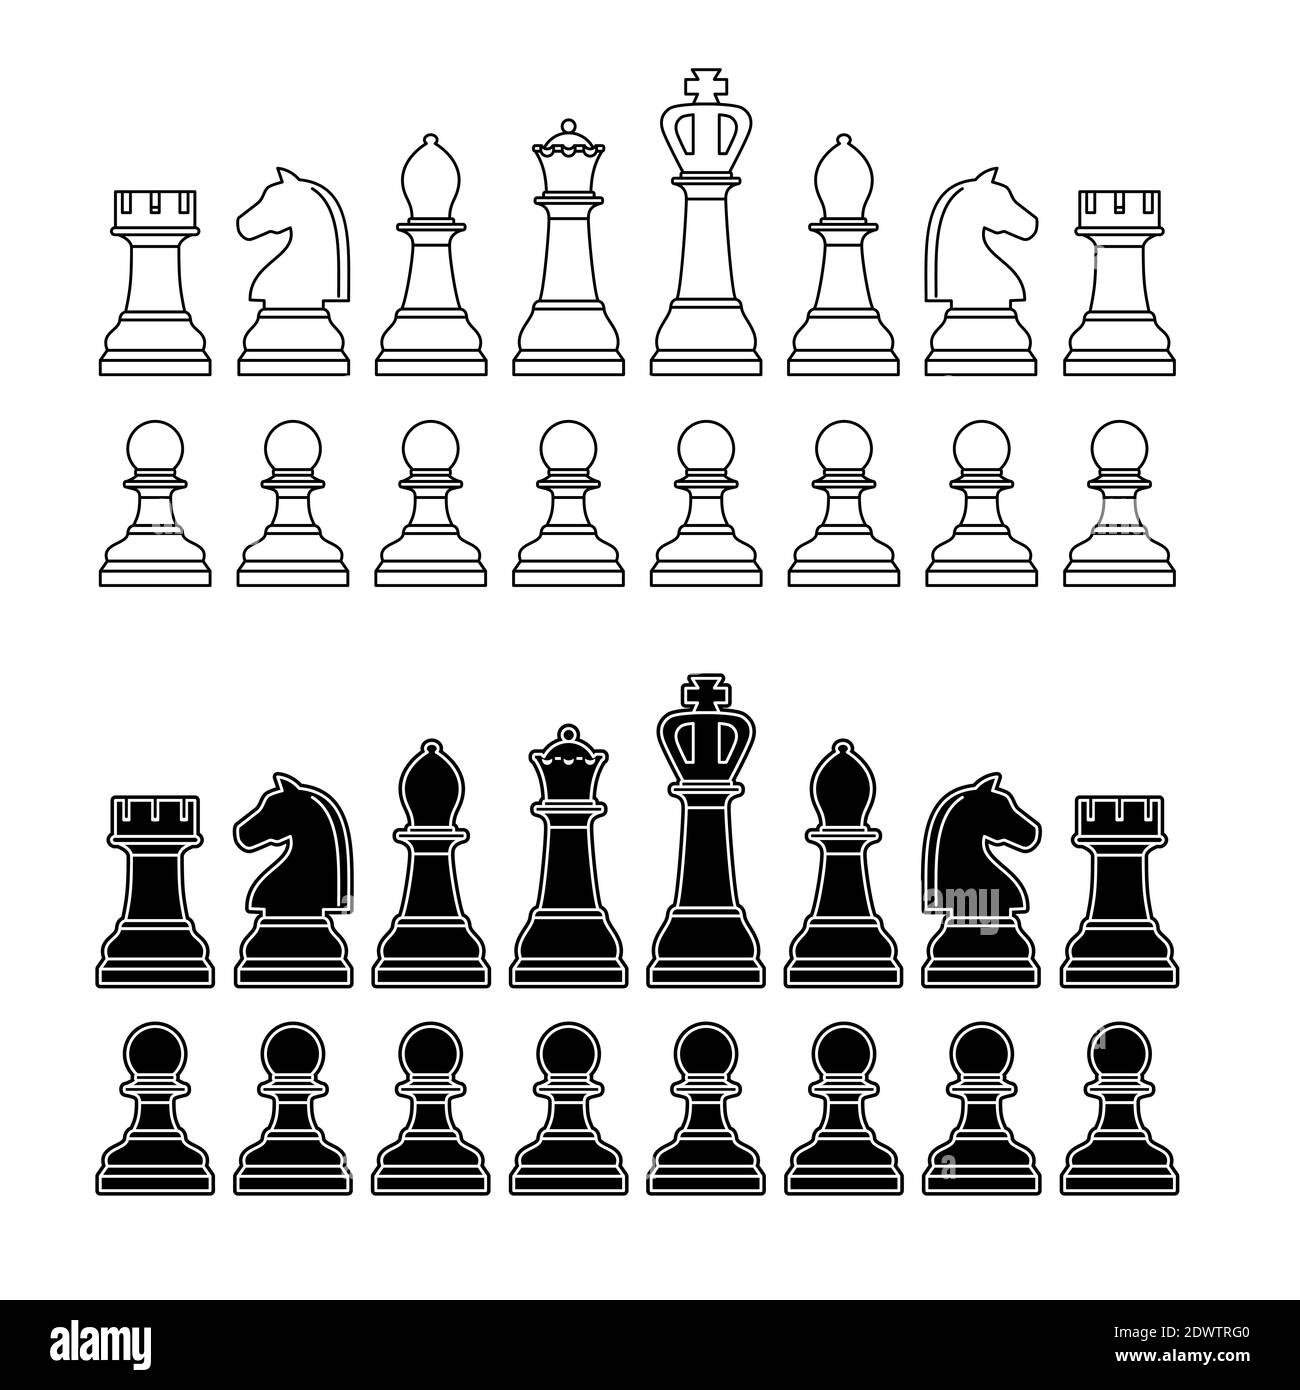 der könig. hölzerne schach stück - Stock Photo #11121550